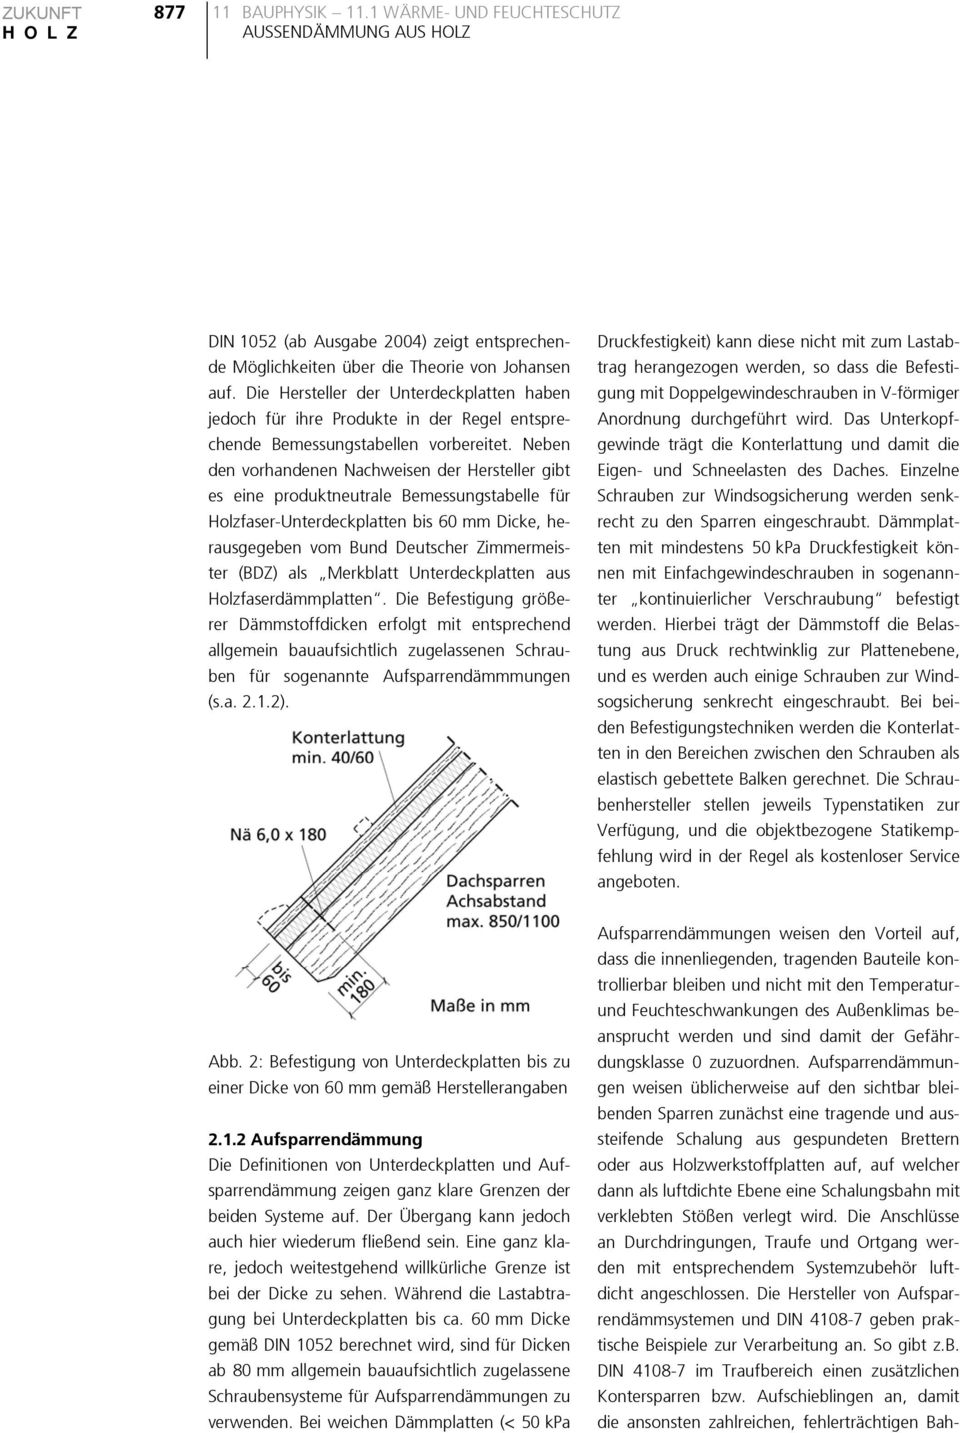 Neben den vorhandenen Nachweisen der Hersteller gibt es eine produktneutrale Bemessungstabelle für Holzfaser-Unterdeckplatten bis 60 mm Dicke, herausgegeben vom Bund Deutscher Zimmermeister (BDZ) als